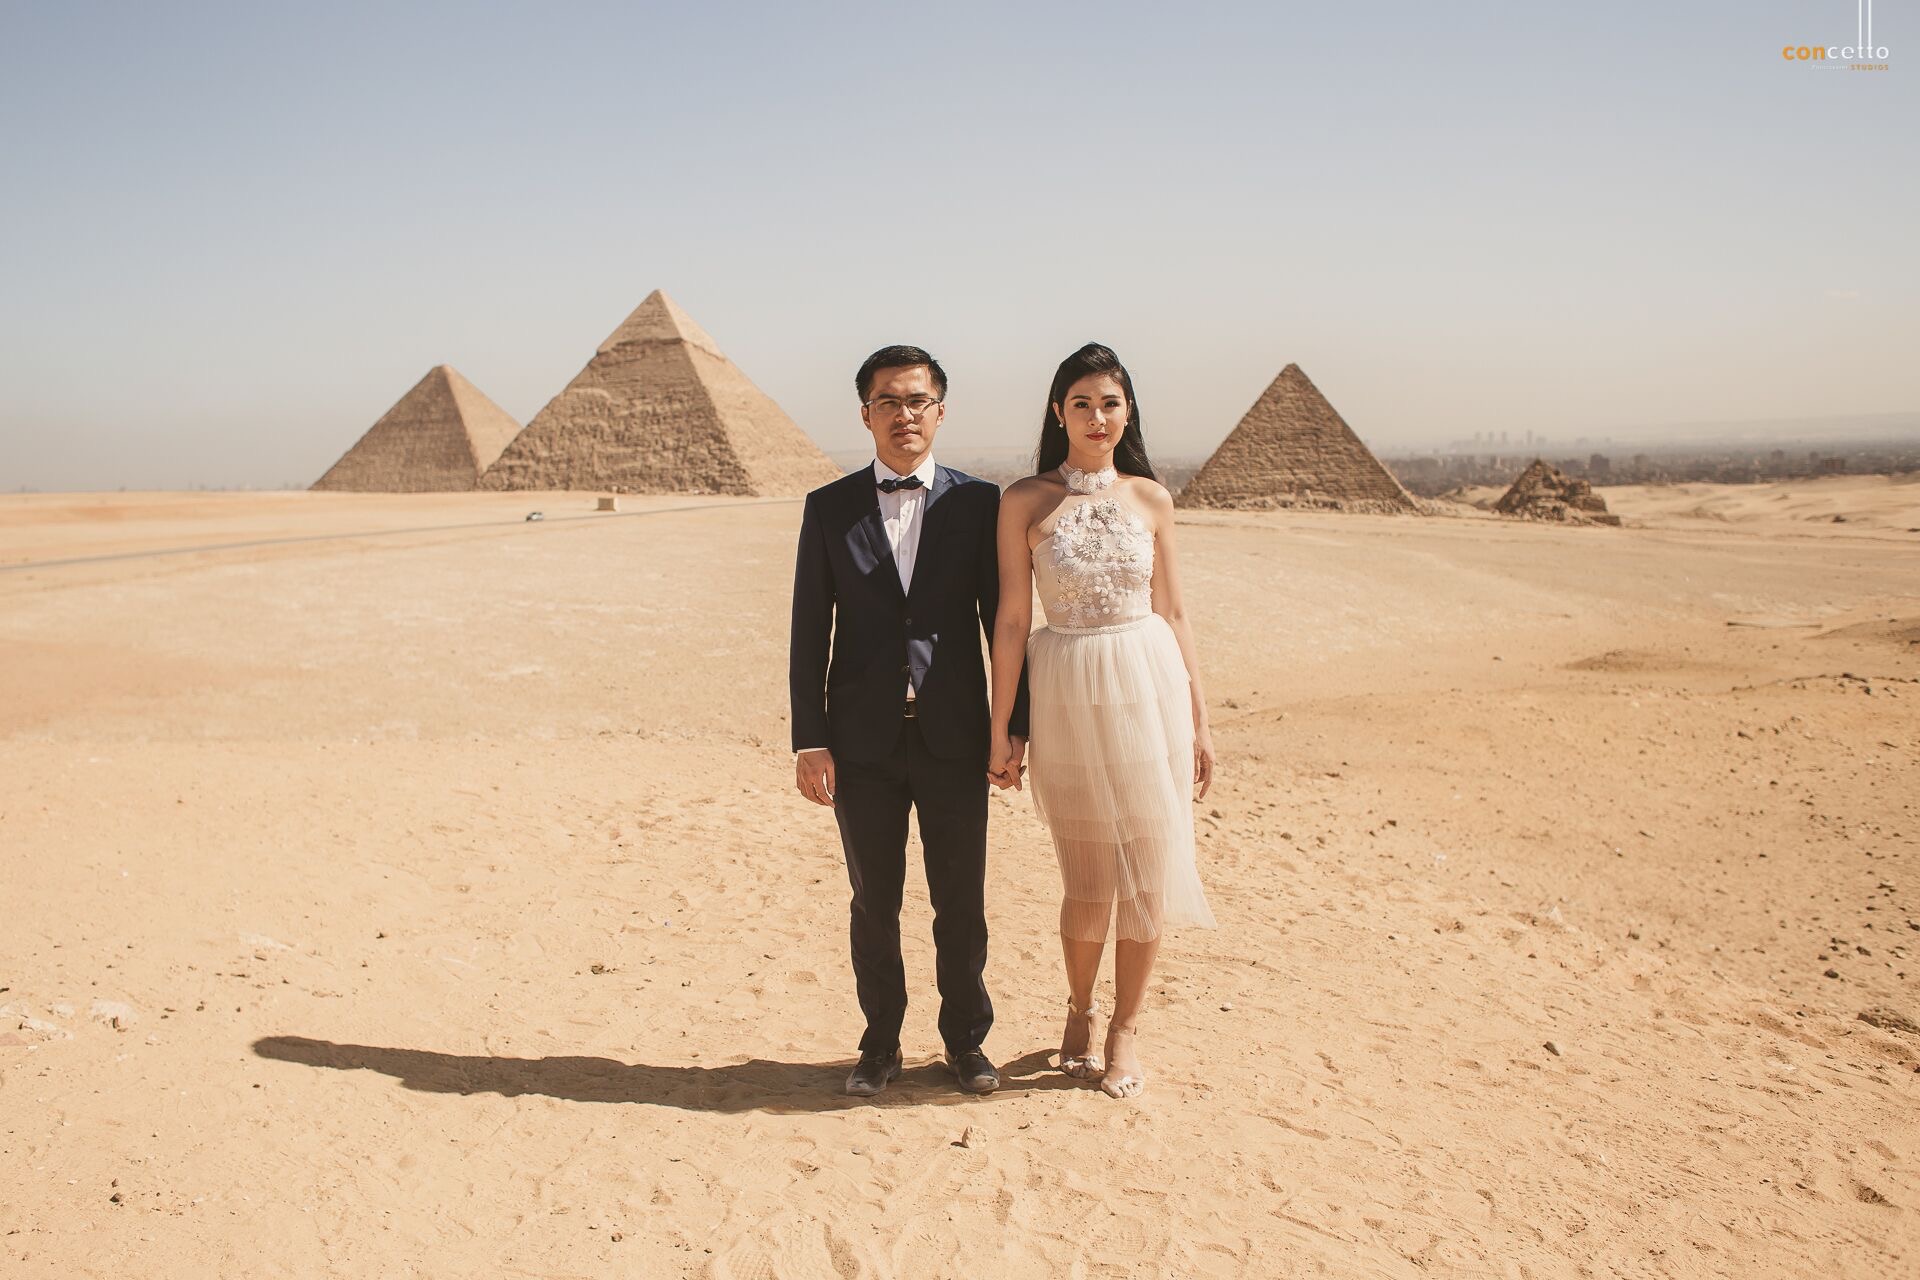 Hoa hậu Ngọc Hân lần đầu công bố ảnh cưới tại Ai Cập - Ảnh 4.